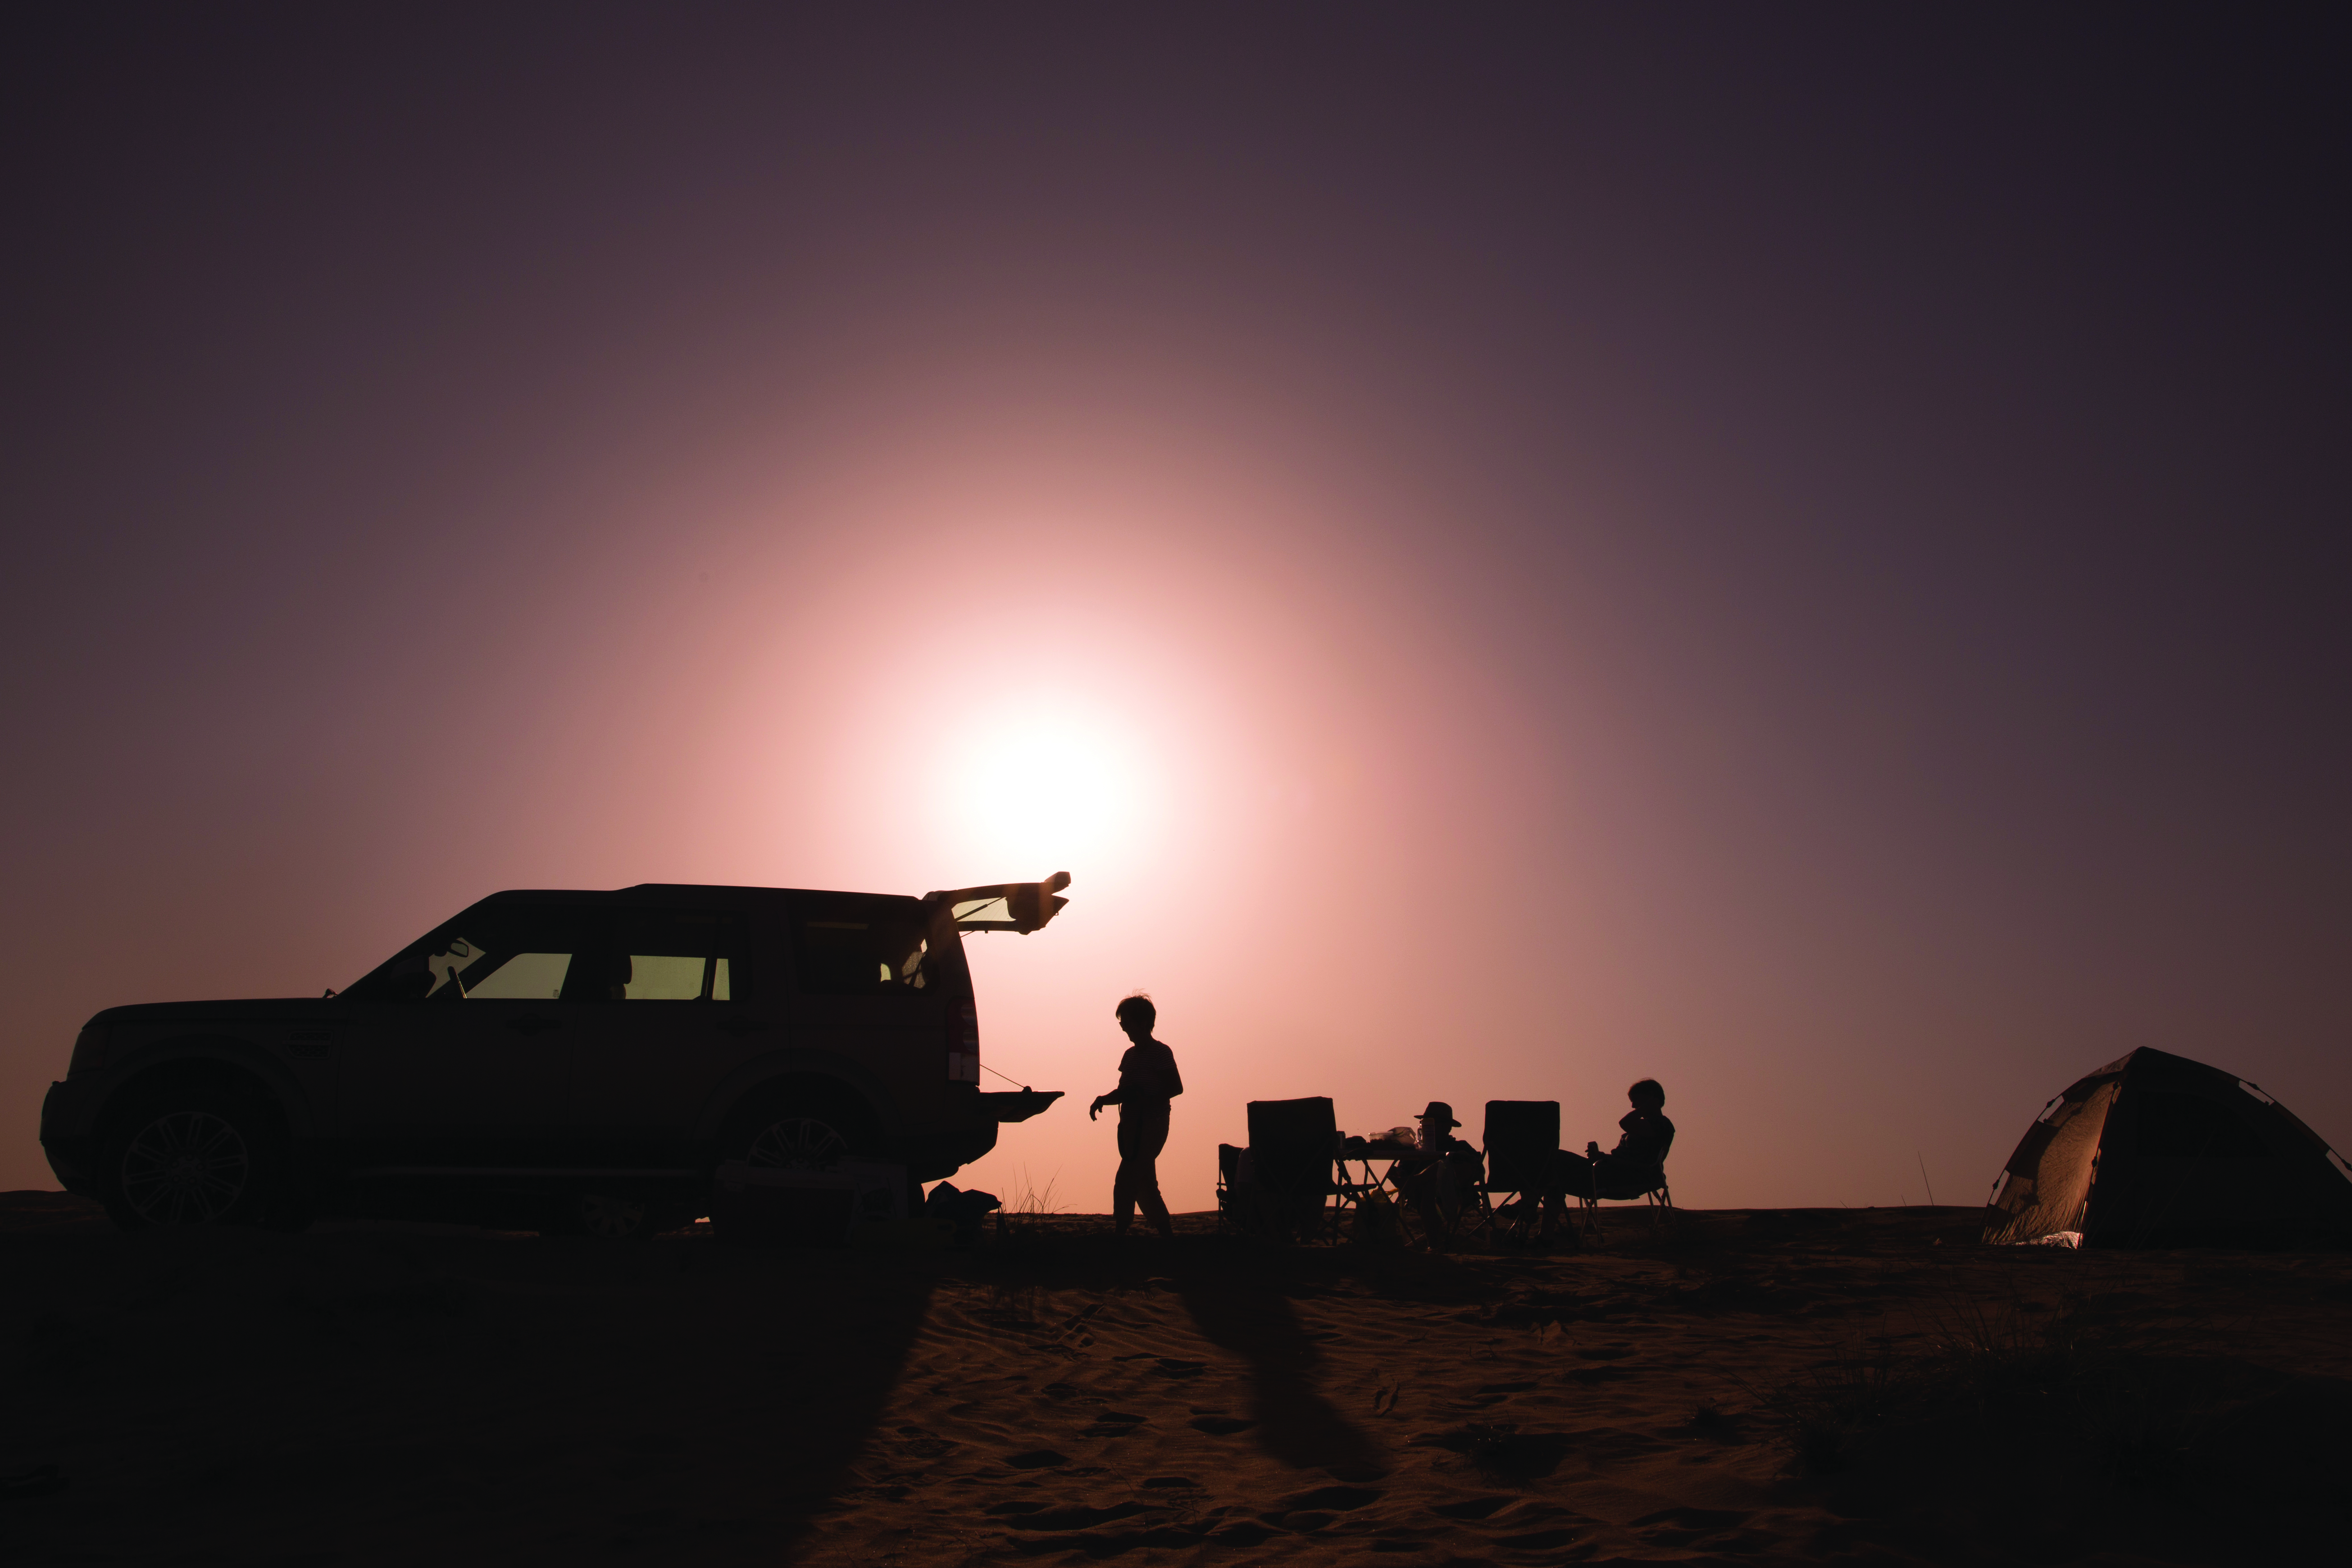 Plan a trip to Oman's deserts